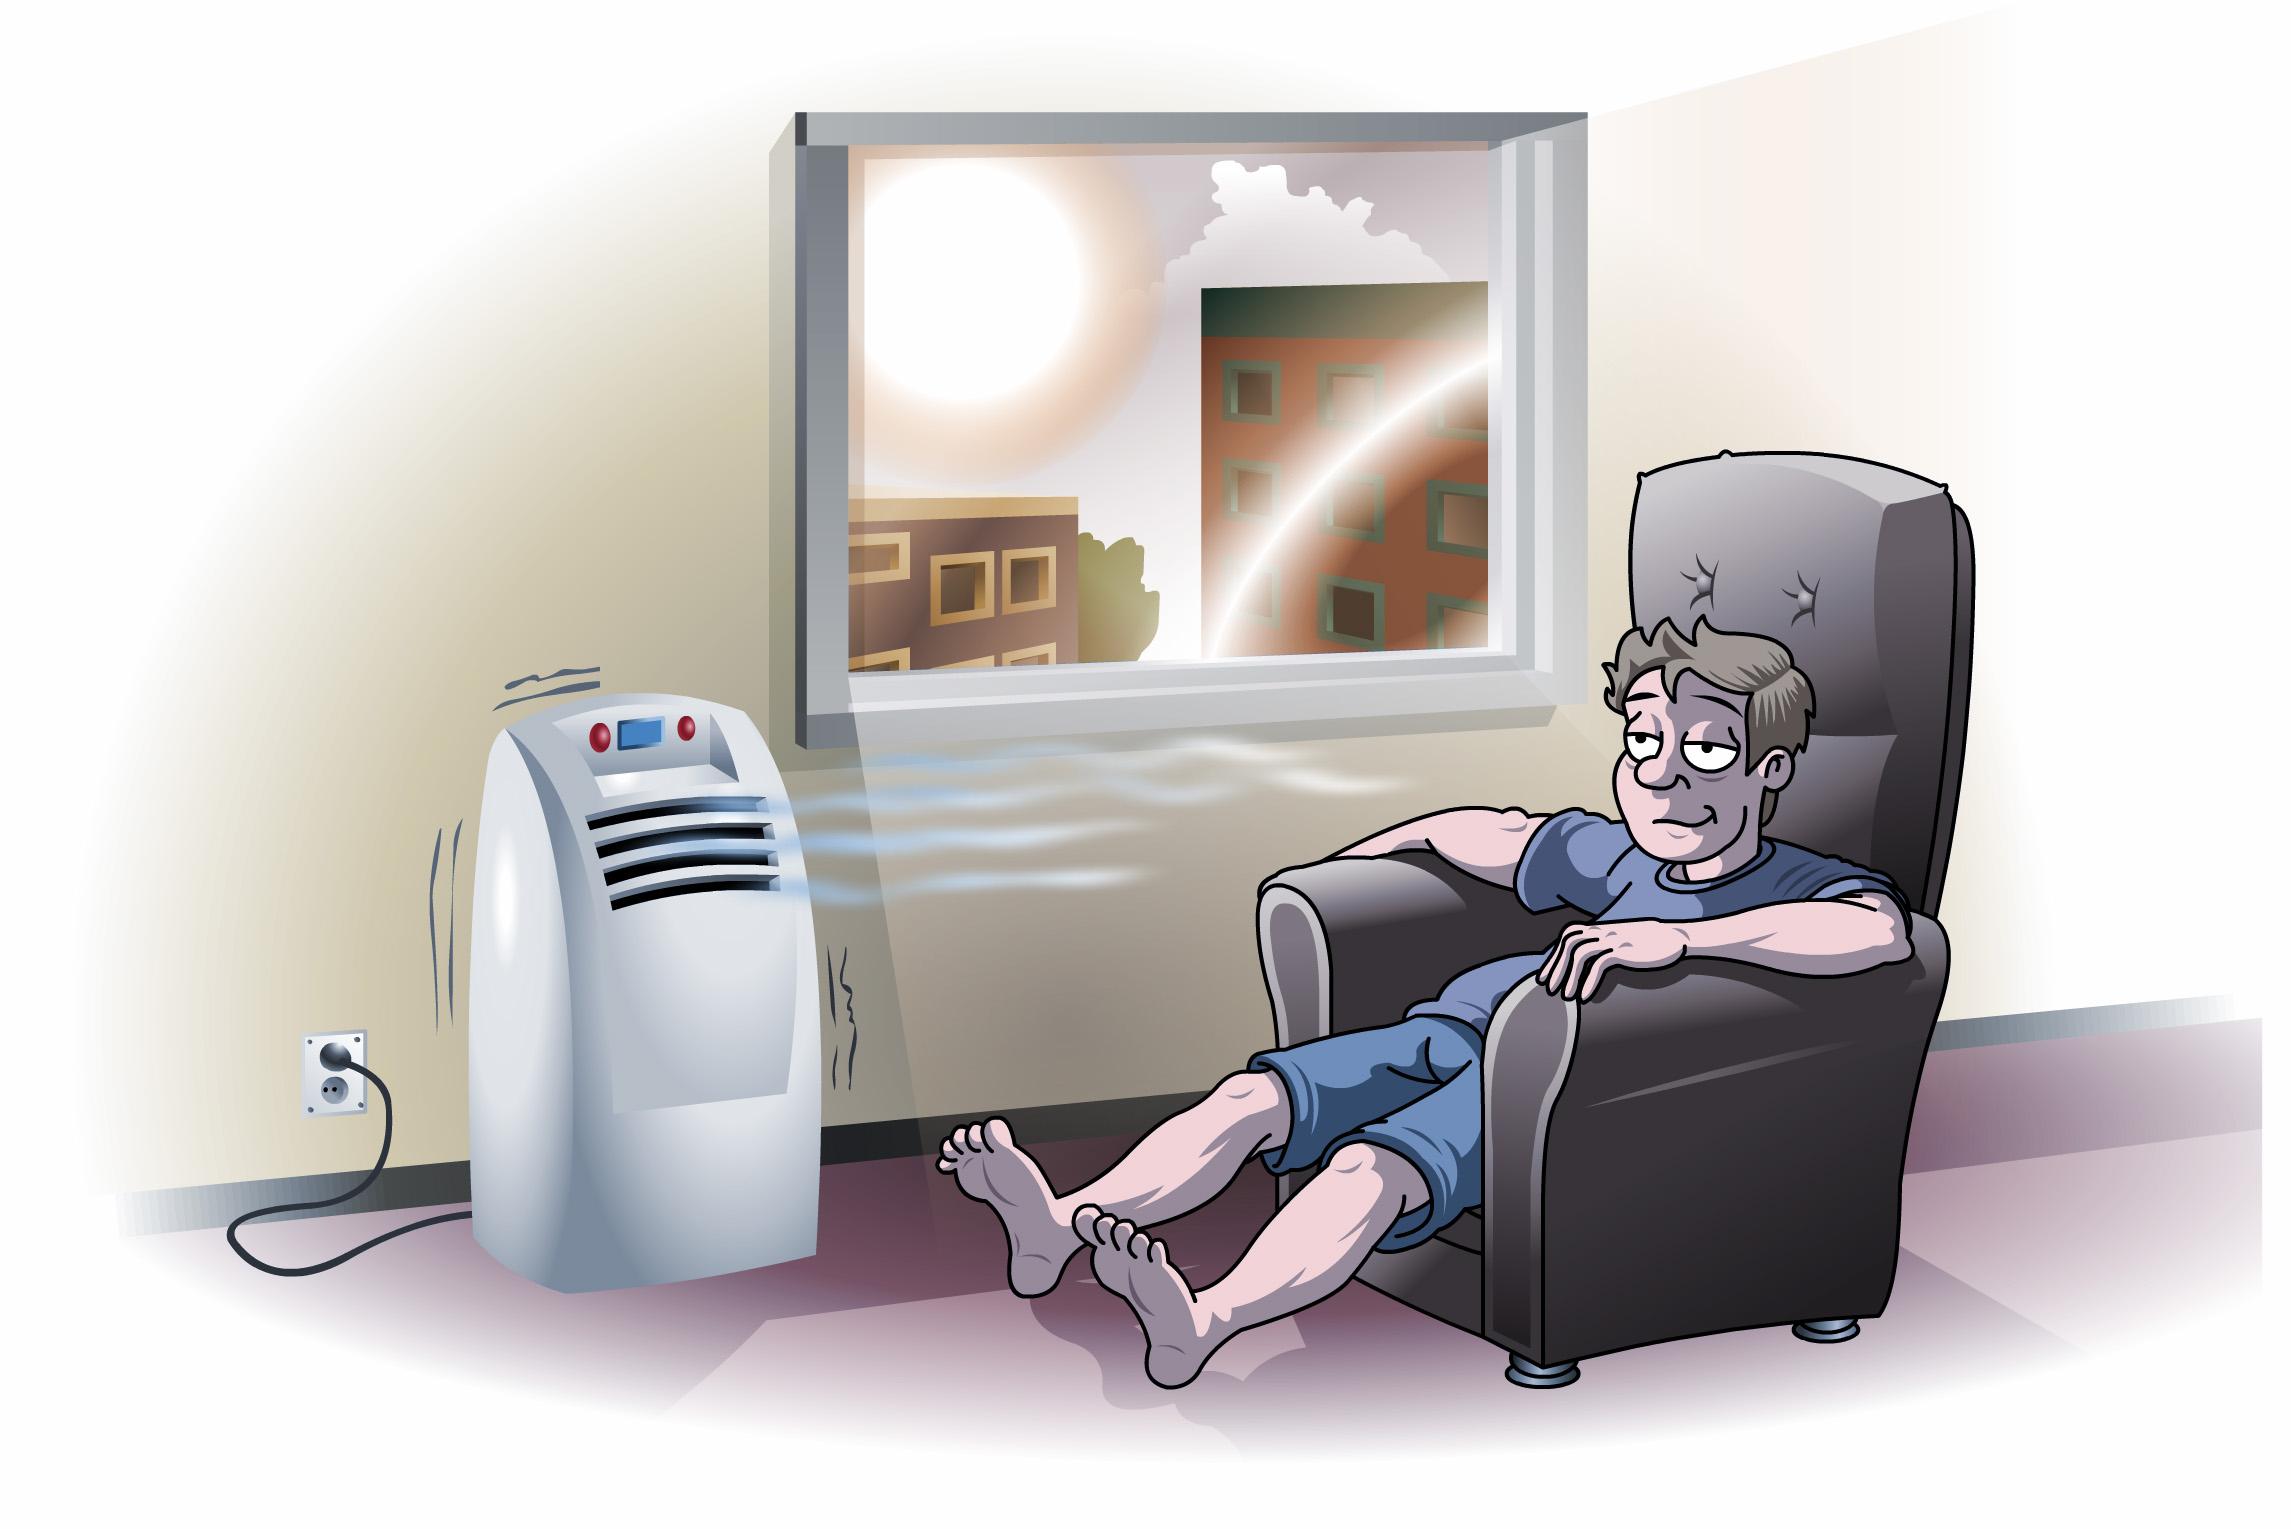 Siirrettävä ilmastointilaite tuo helpotusta kesän helteisiin ja se on helppo siirtää varastoon talven ajaksi.